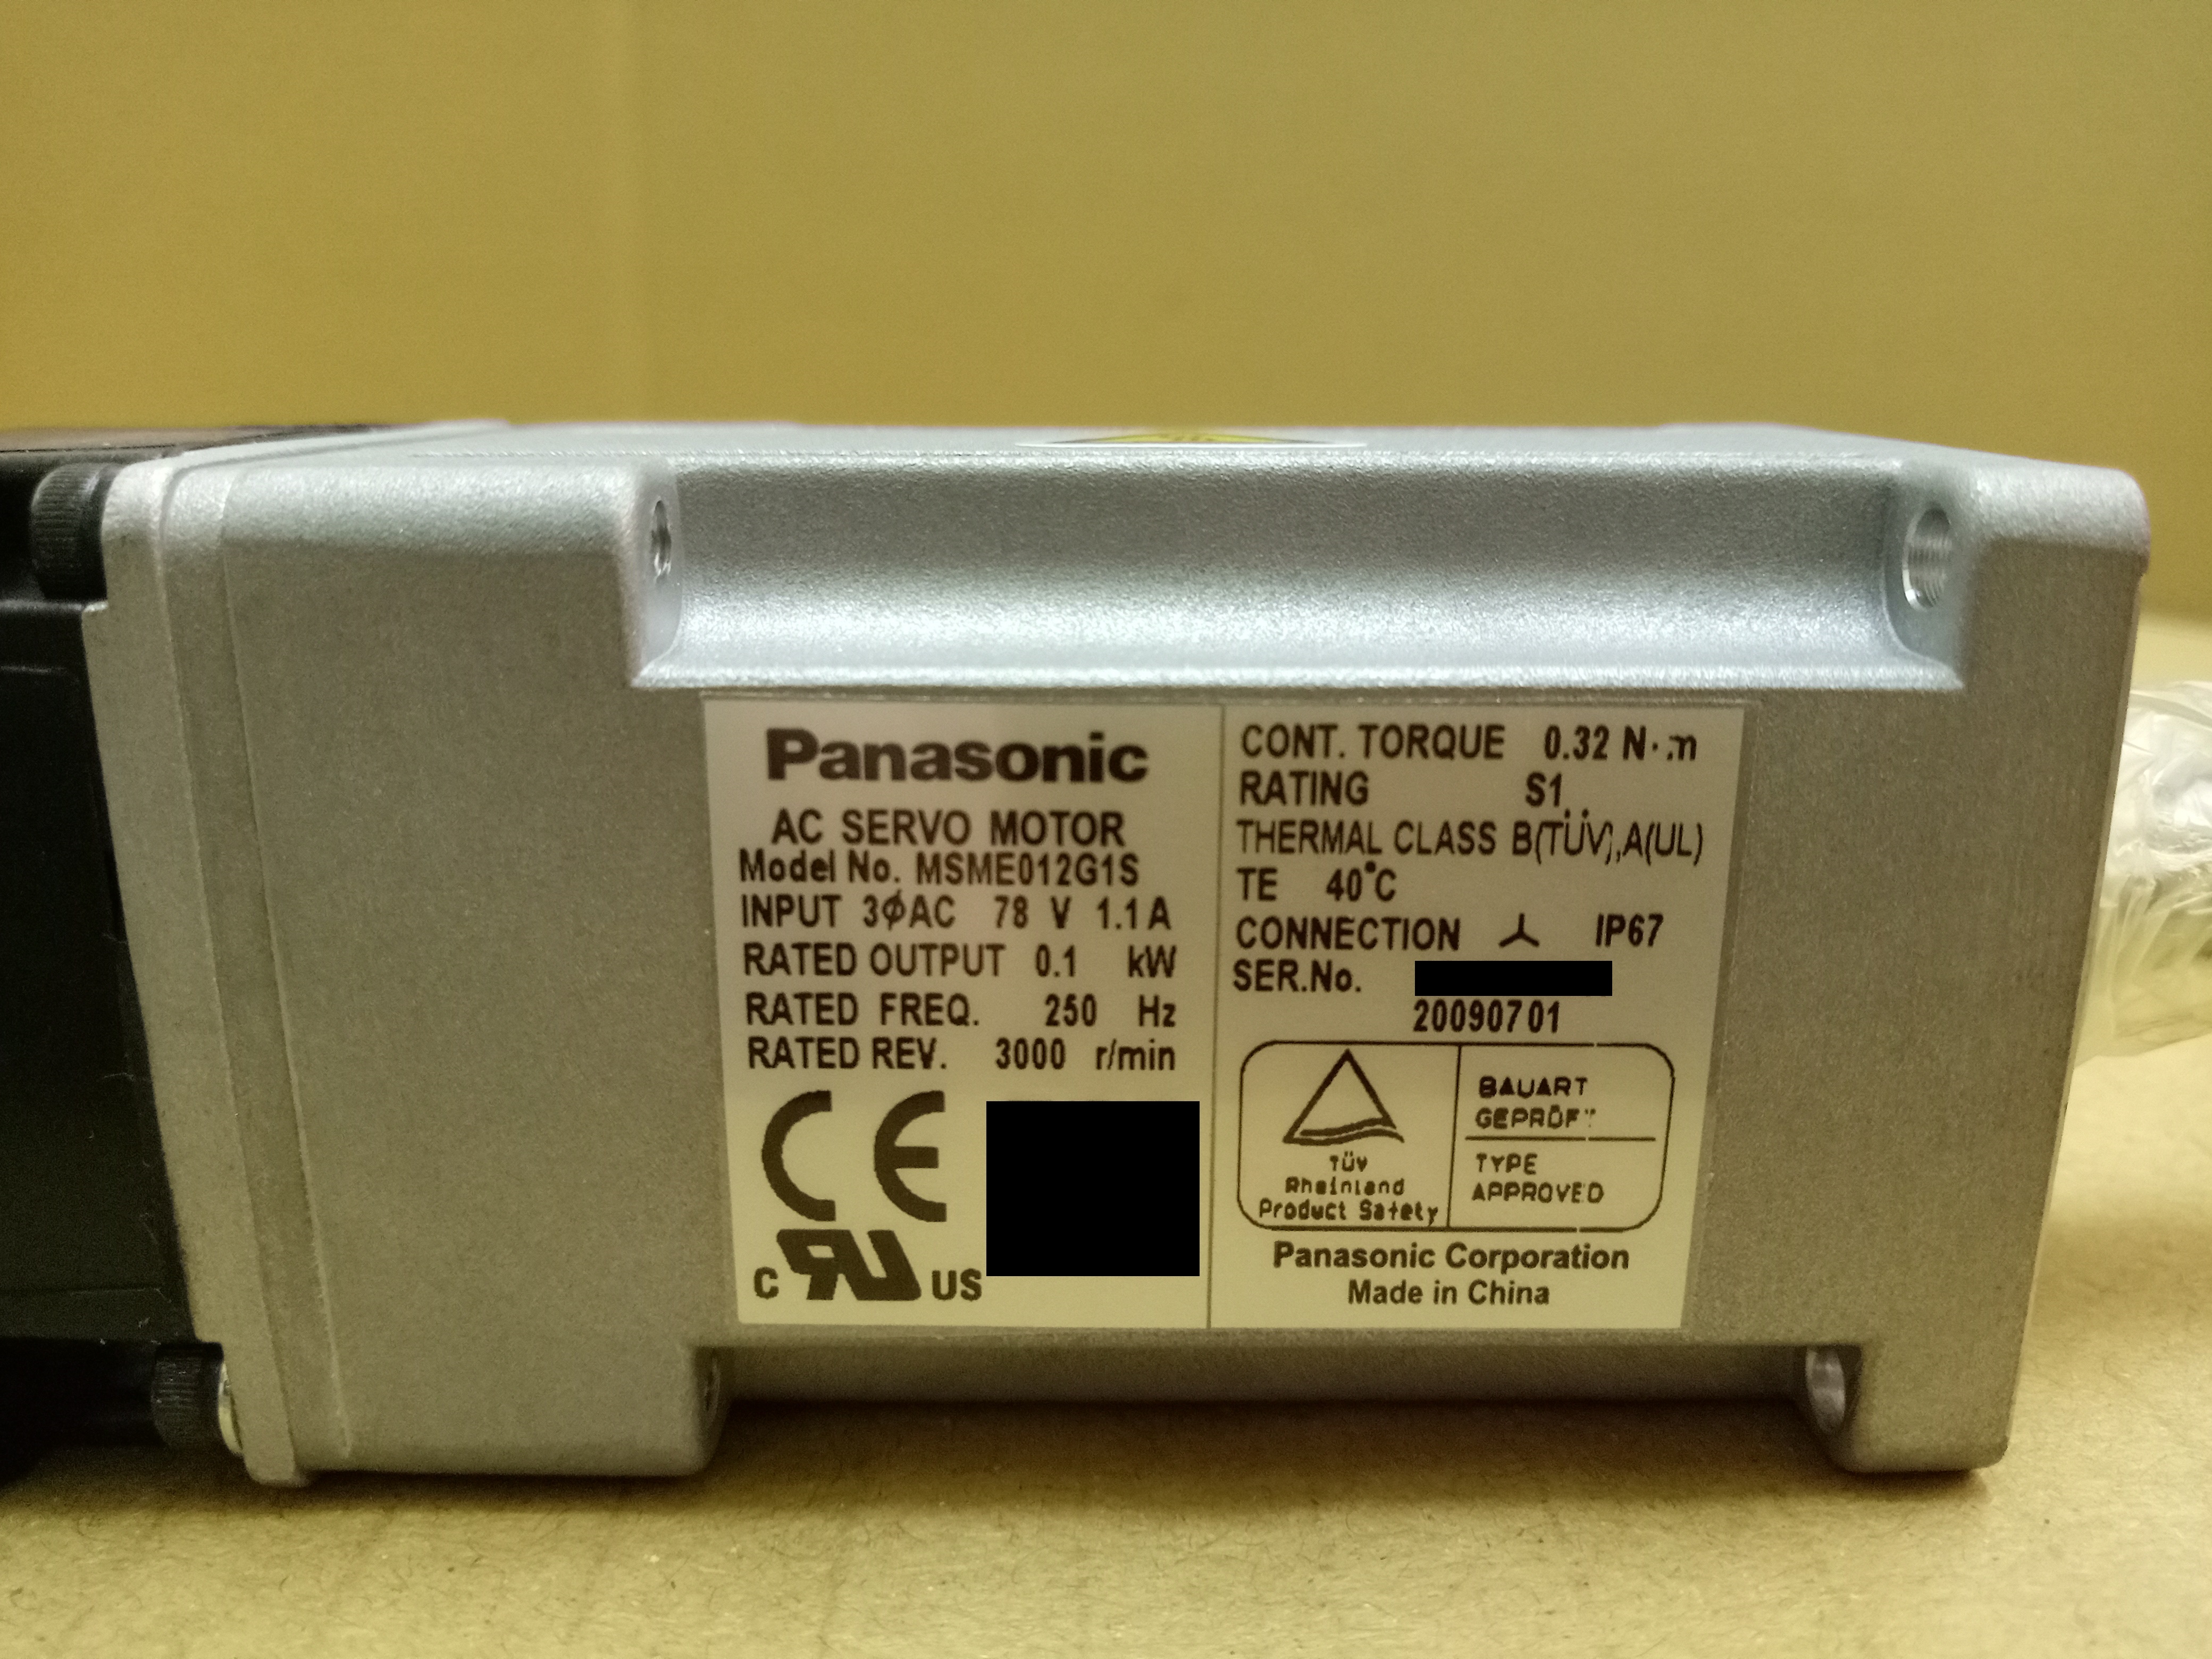 松下伺服电机Panasonic AC servo motor MSME012G1S MSME012G1S,Panasonic AC servo motor,松下伺服马达,国际牌松下电机,国际牌松下电动机